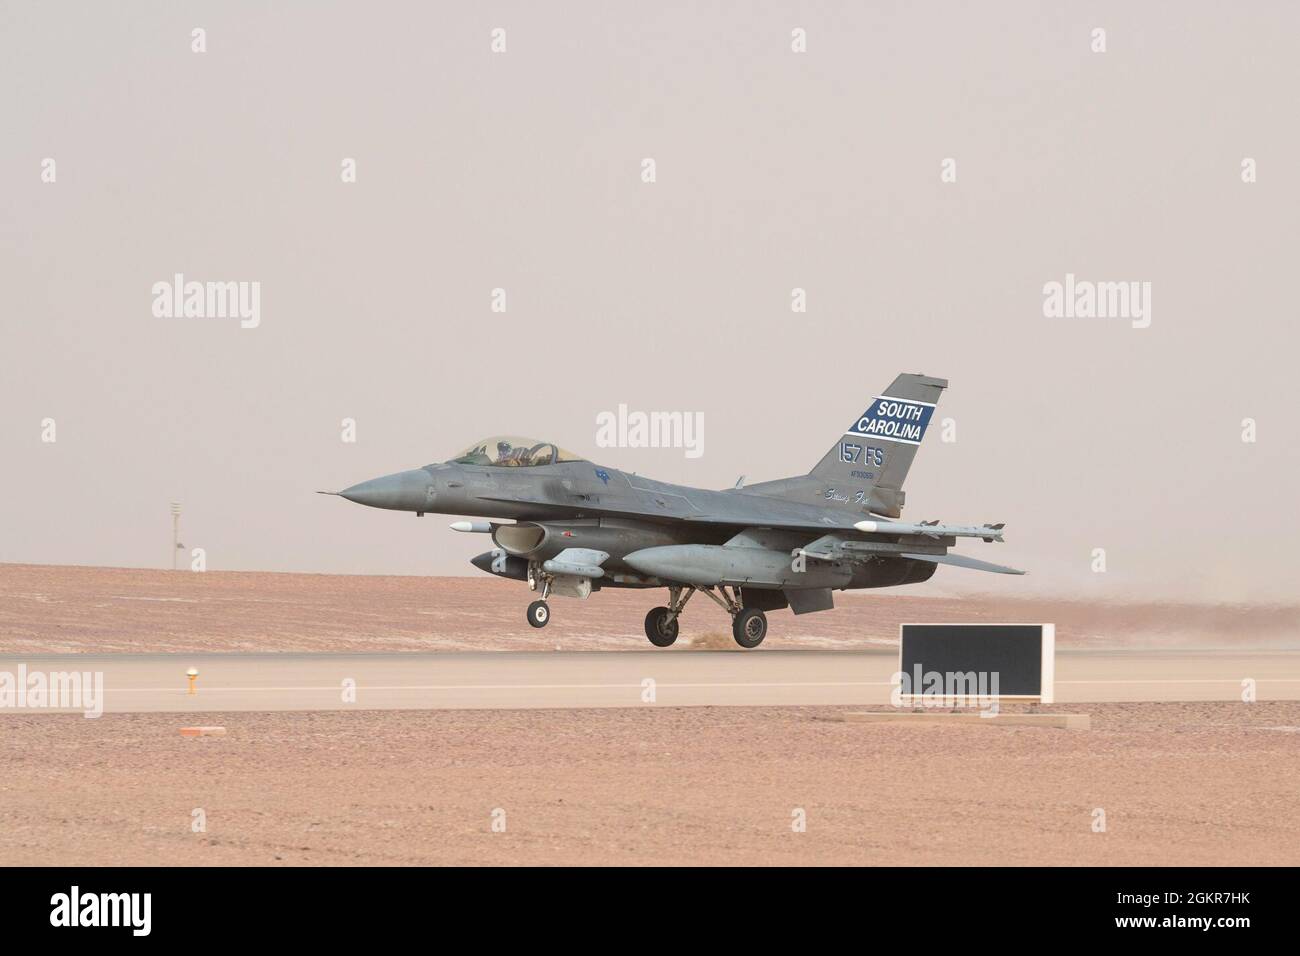 Un faucon de combat F-16 de la Force aérienne des États-Unis prend son envol lors d'une mission d'intégration de la nation partenaire avec la Royal Saudi Air Force à la base aérienne de Prince Sultan, Royaume d'Arabie saoudite, le 17 juin 2021. Les aéronefs centraux des Forces aériennes des États-Unis travaillent régulièrement avec les pays de la coalition et les pays partenaires pour tester leurs capacités collectives de lutte contre les SAMU afin d'assurer la sécurité et la stabilité de l'espace aérien régional. Banque D'Images